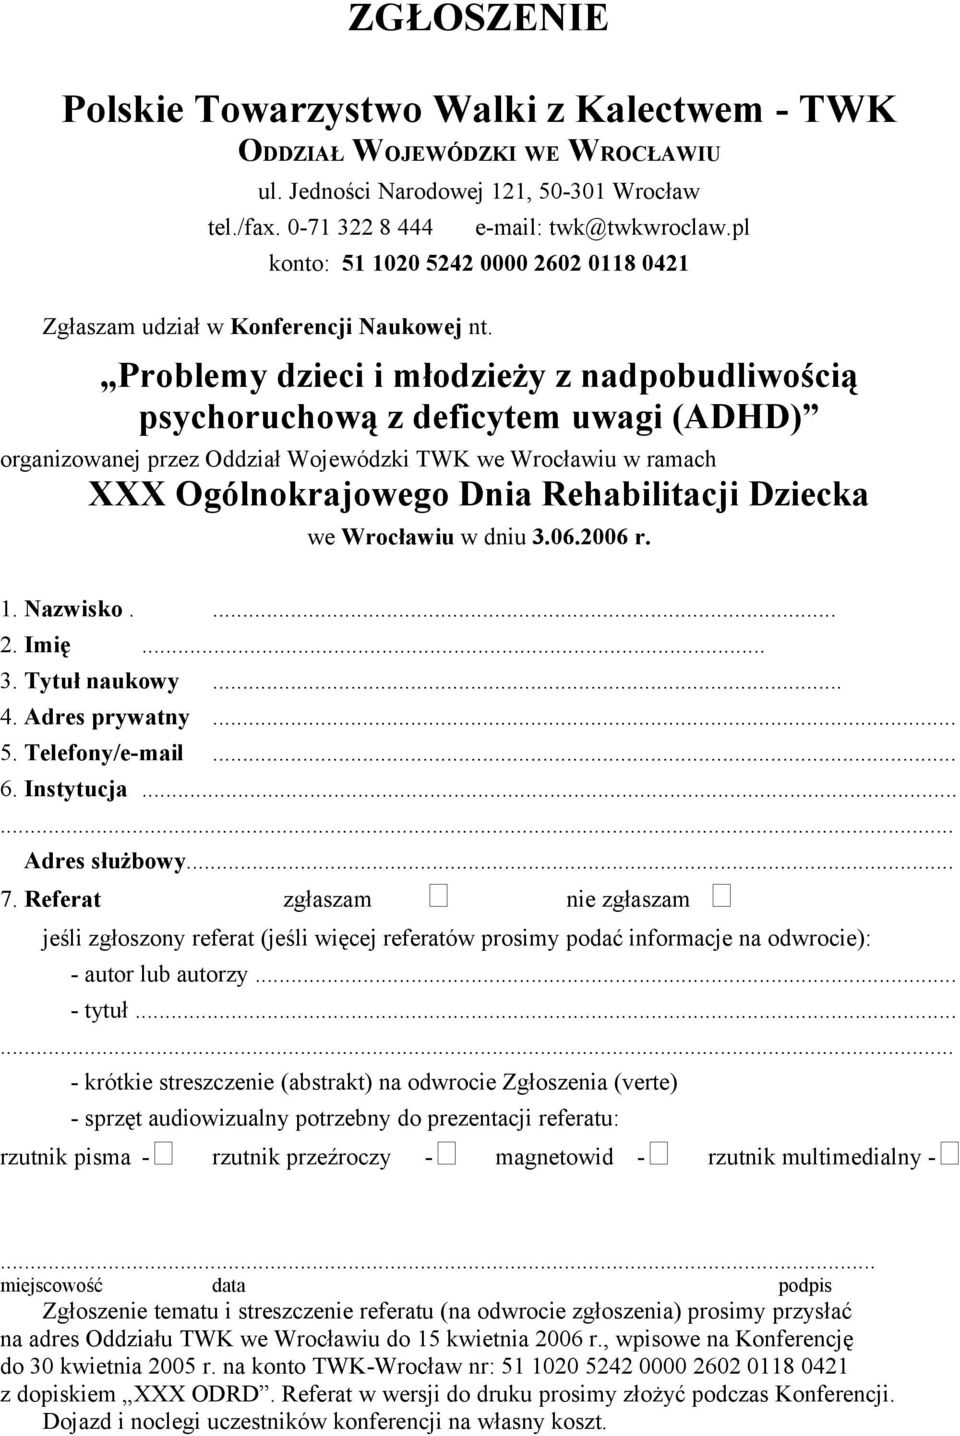 Problemy dzieci i młodzieży z nadpobudliwością psychoruchową z deficytem uwagi (ADHD) organizowanej przez Oddział Wojewódzki TWK we Wrocławiu w ramach XXX Ogólnokrajowego Dnia Rehabilitacji Dziecka